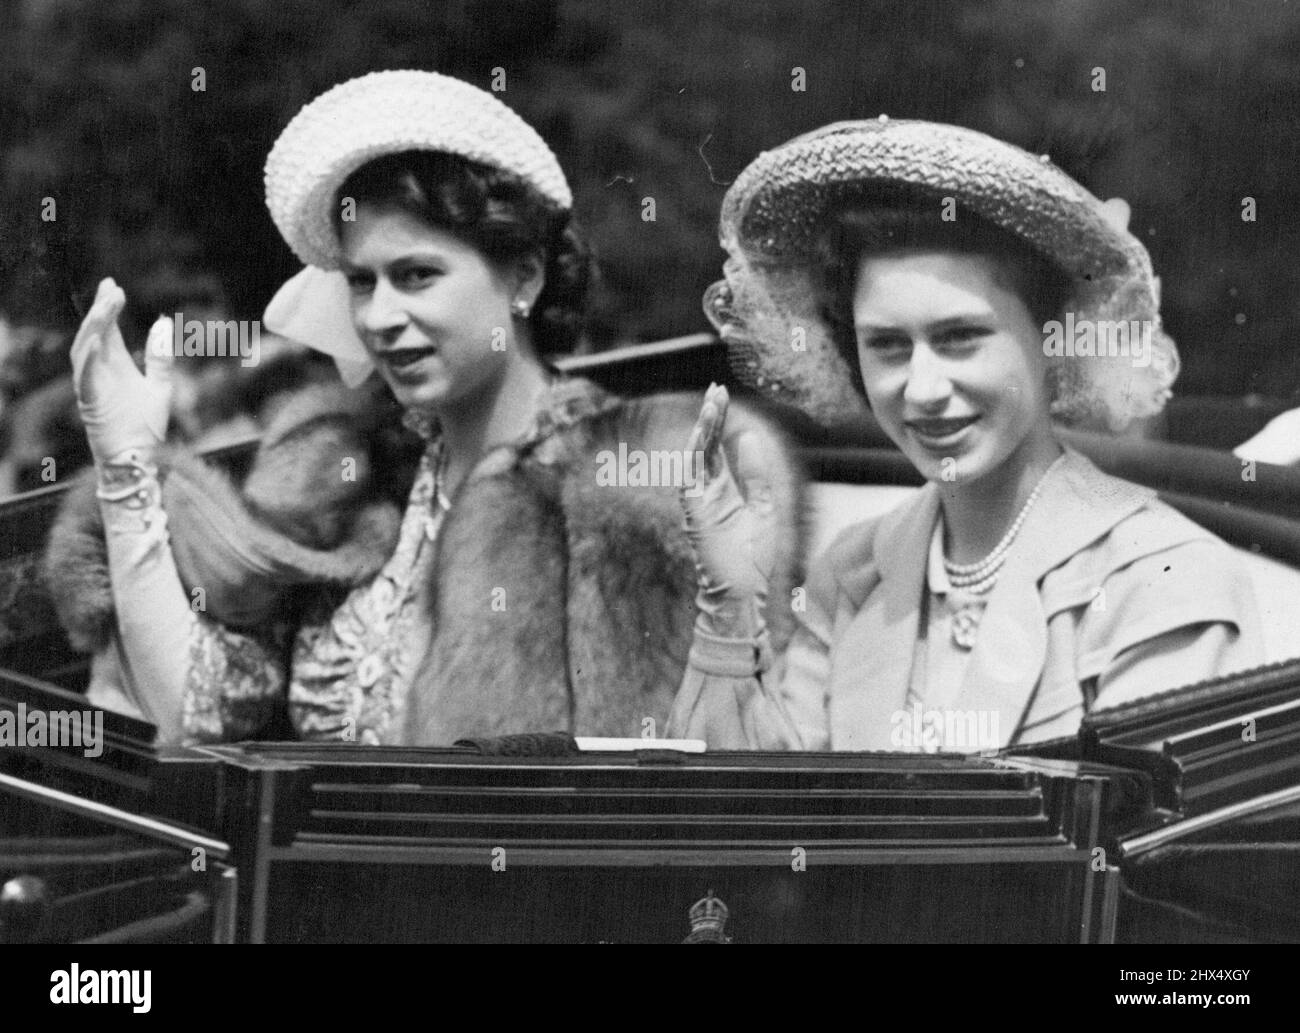 Accueil royal à Royal Ascot : la princesse Elizabeth (à gauche) et sa sœur, la princesse Margaret, saluent les pilotes lorsqu'ils arrivent à l'hippodrome d'Ascot pour le dernier jour de la rencontre. 18 juin 1948. Banque D'Images